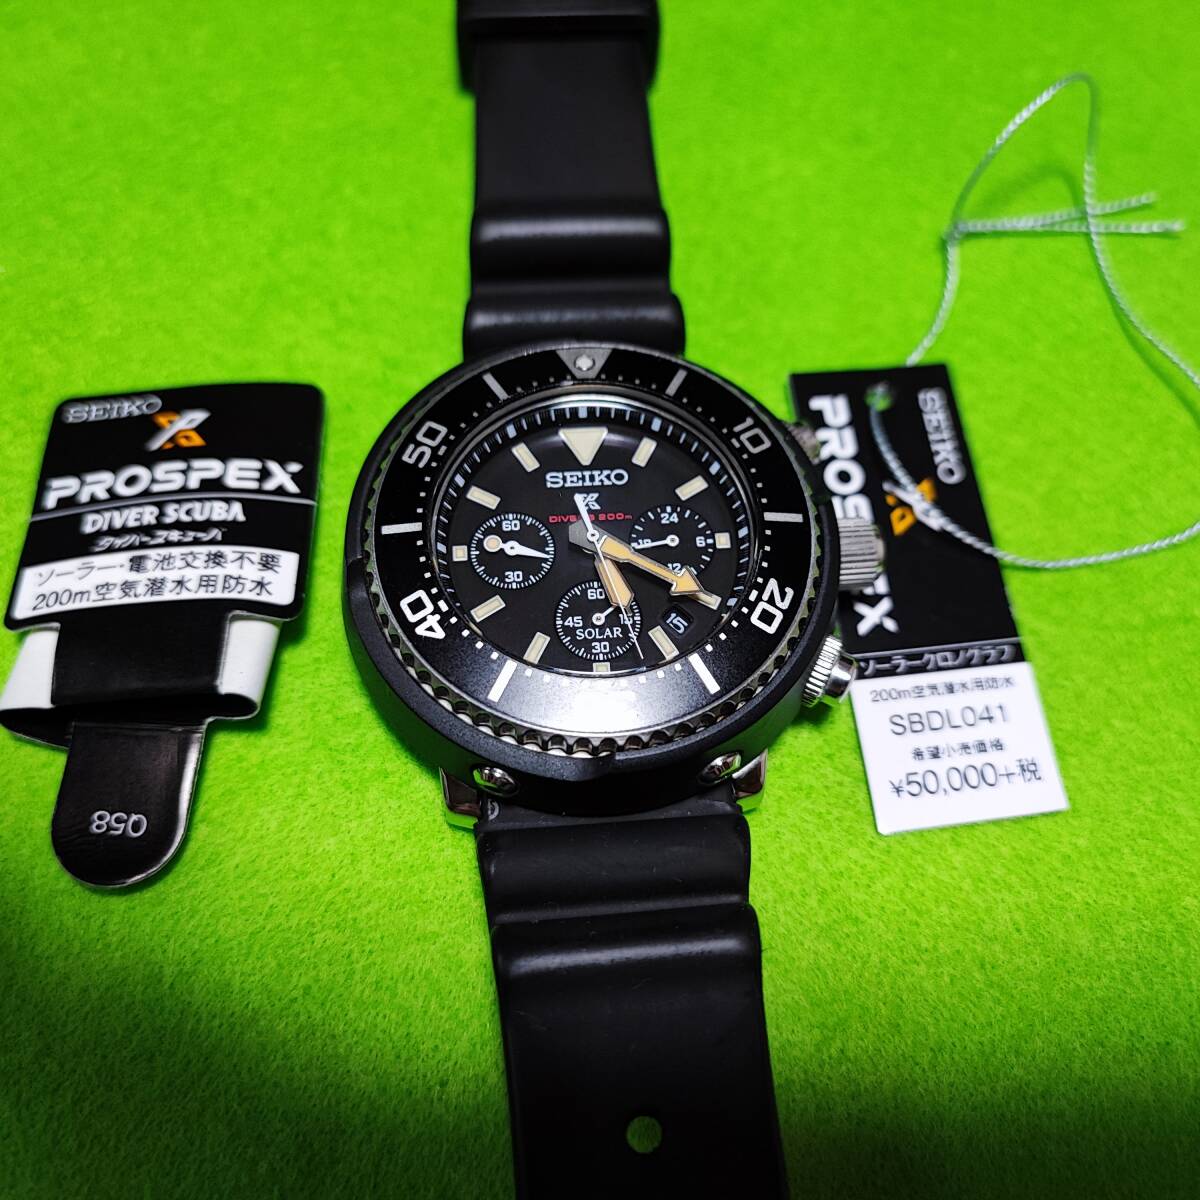 中古SEIKO セイコー PROSPEX プロスペックス ソーラー メンズ 腕時計 SBDL041 ダイバースキューバ LOWERCASE プロデュース 限定モデルの画像4